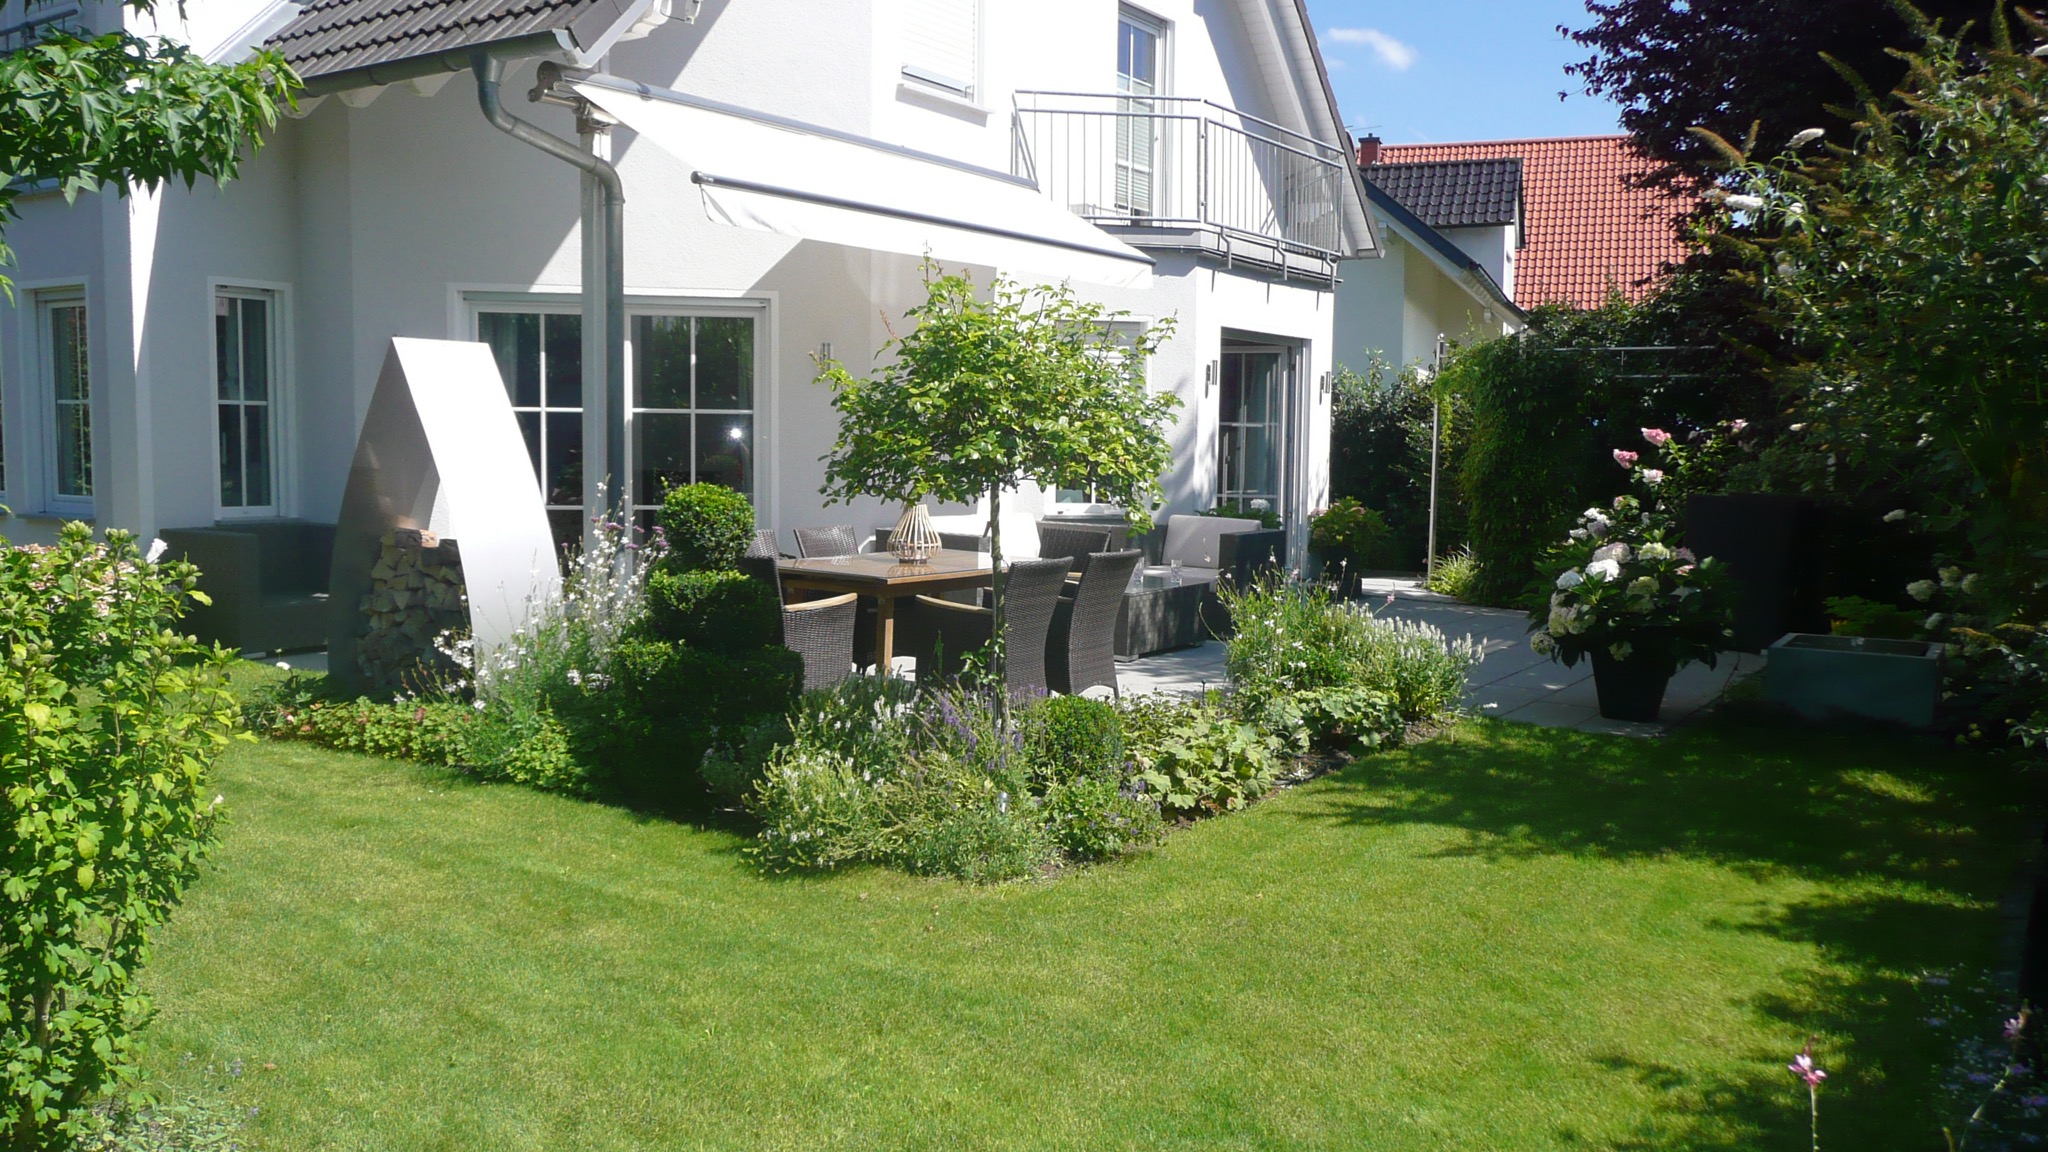 Garten nach Neugestaltung in klassischem Design, Rasenfläche und bepflanzte Beete an der möblierten Terrasse.